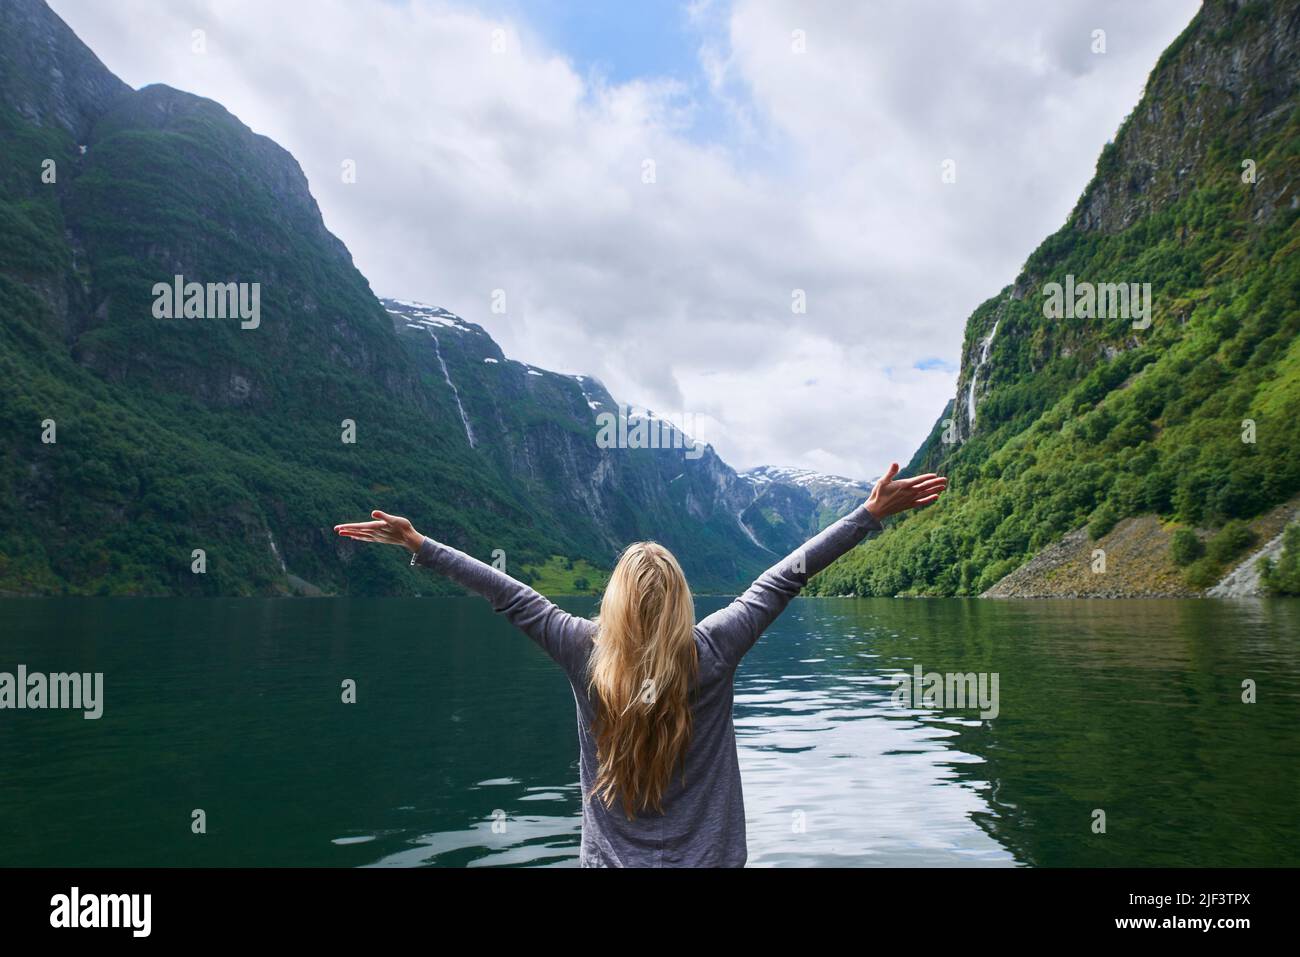 Reiseabenteuer Frau feiert die Arme, die beim Anblick des majestätischen Gletschertales Fjordsees erhoben werden, während sie die wunderschöne Erde entdeckt Stockfoto